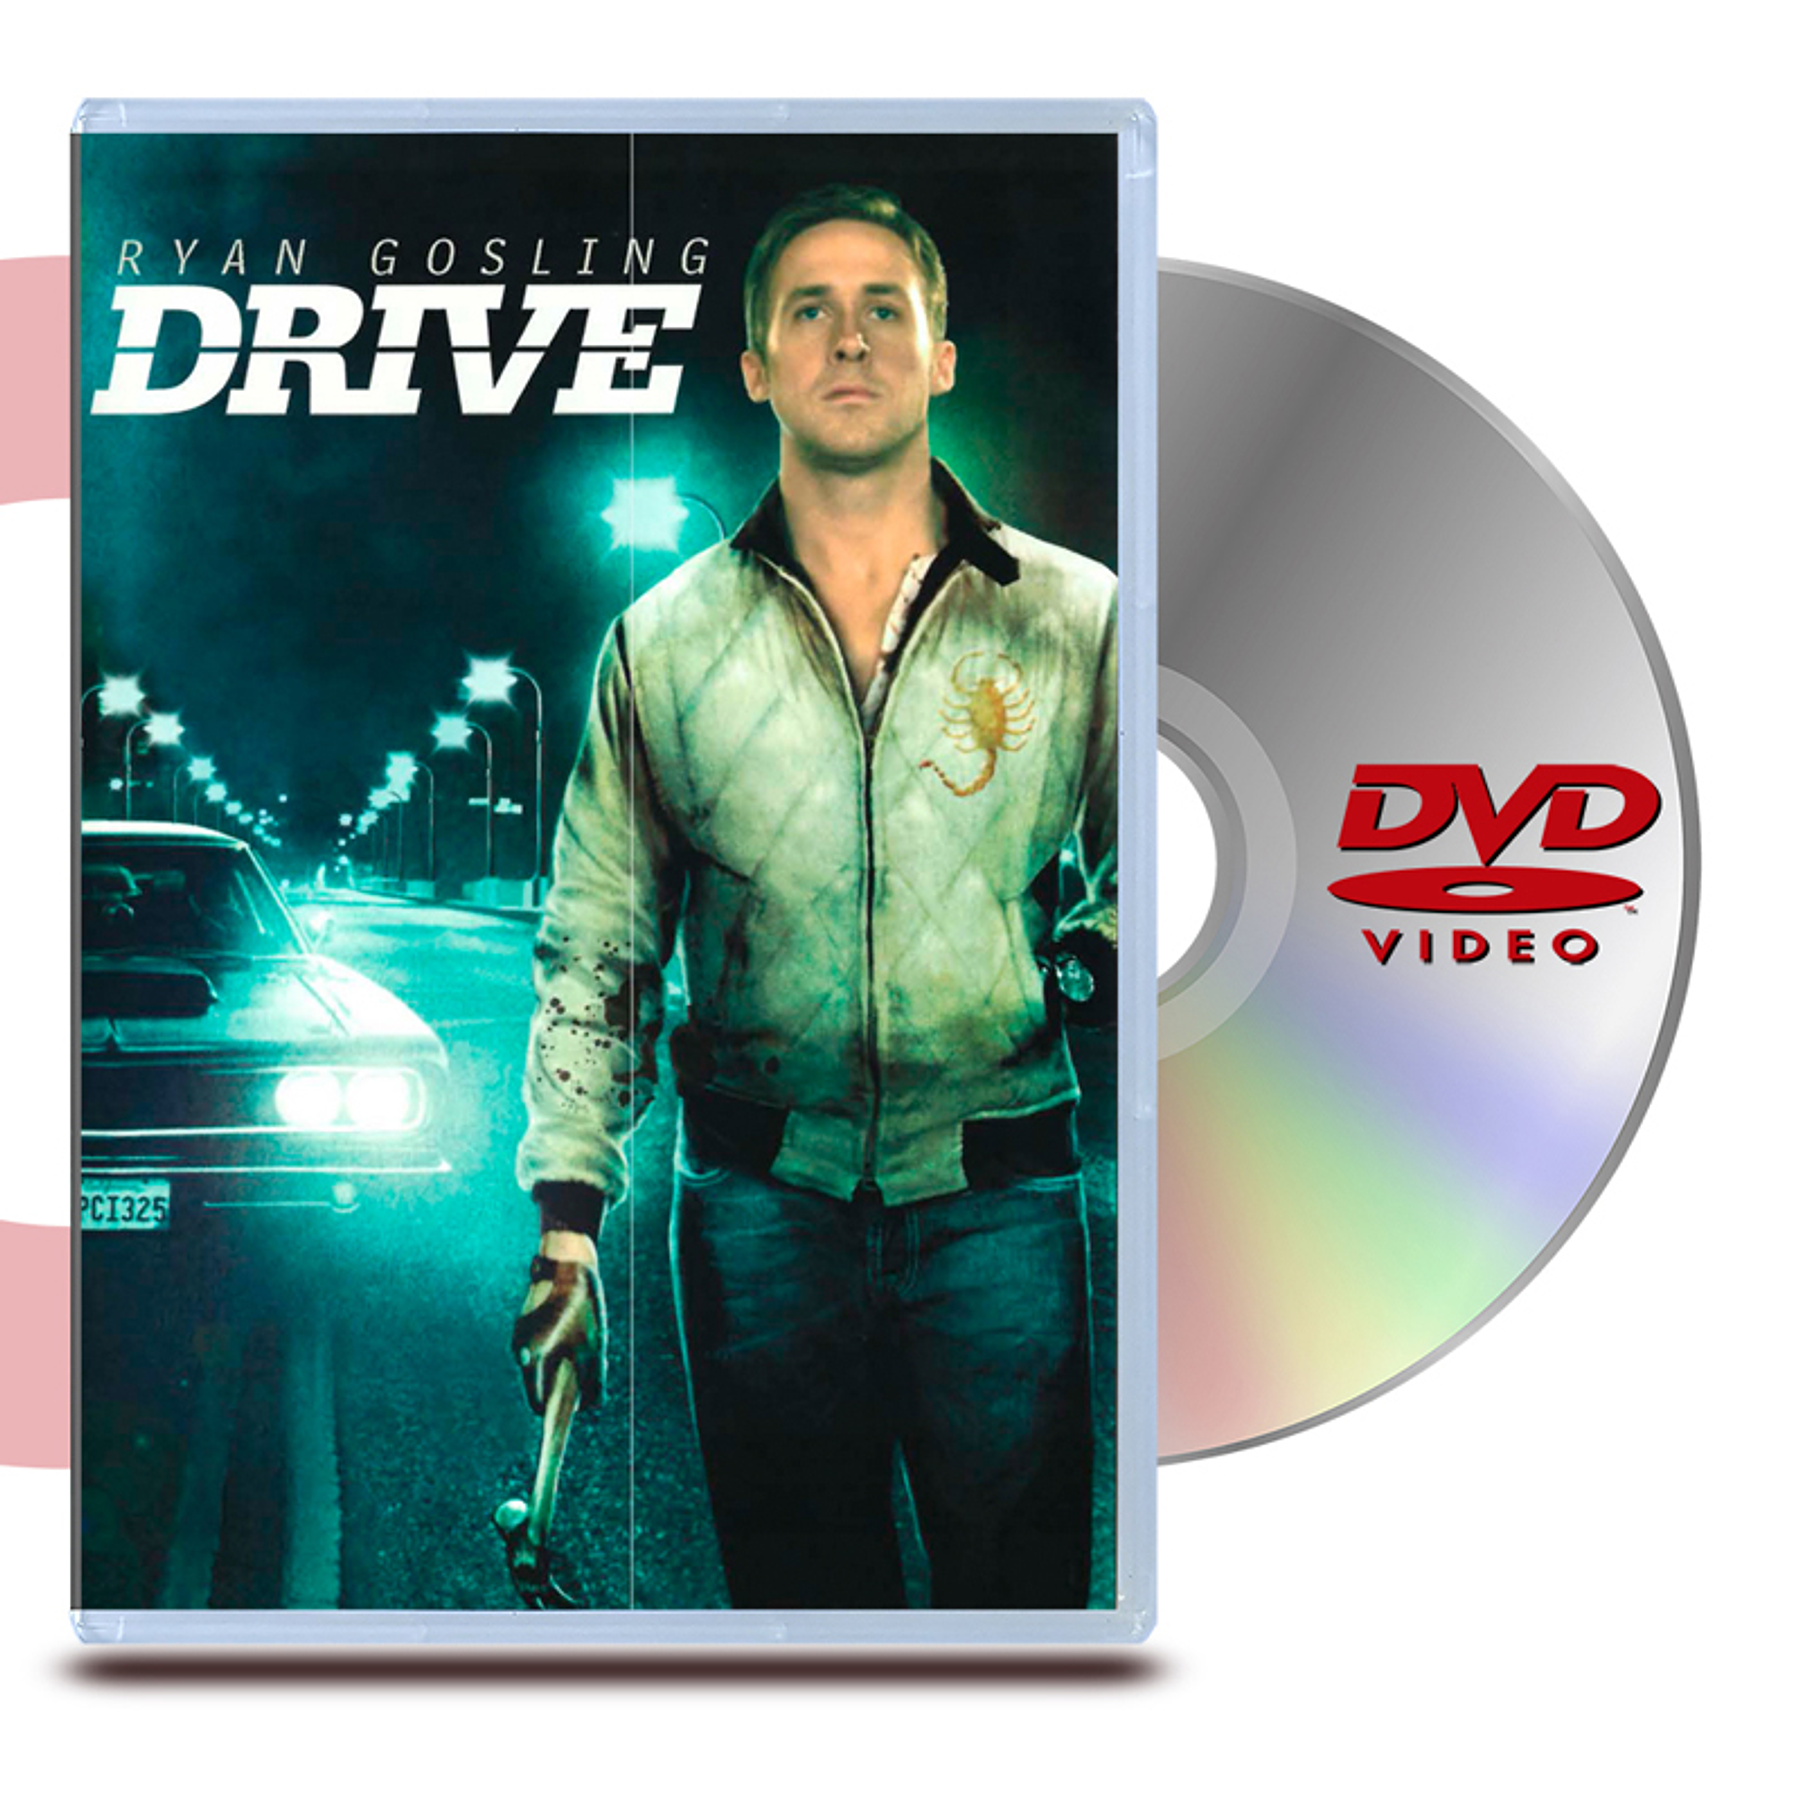 DVD Drive